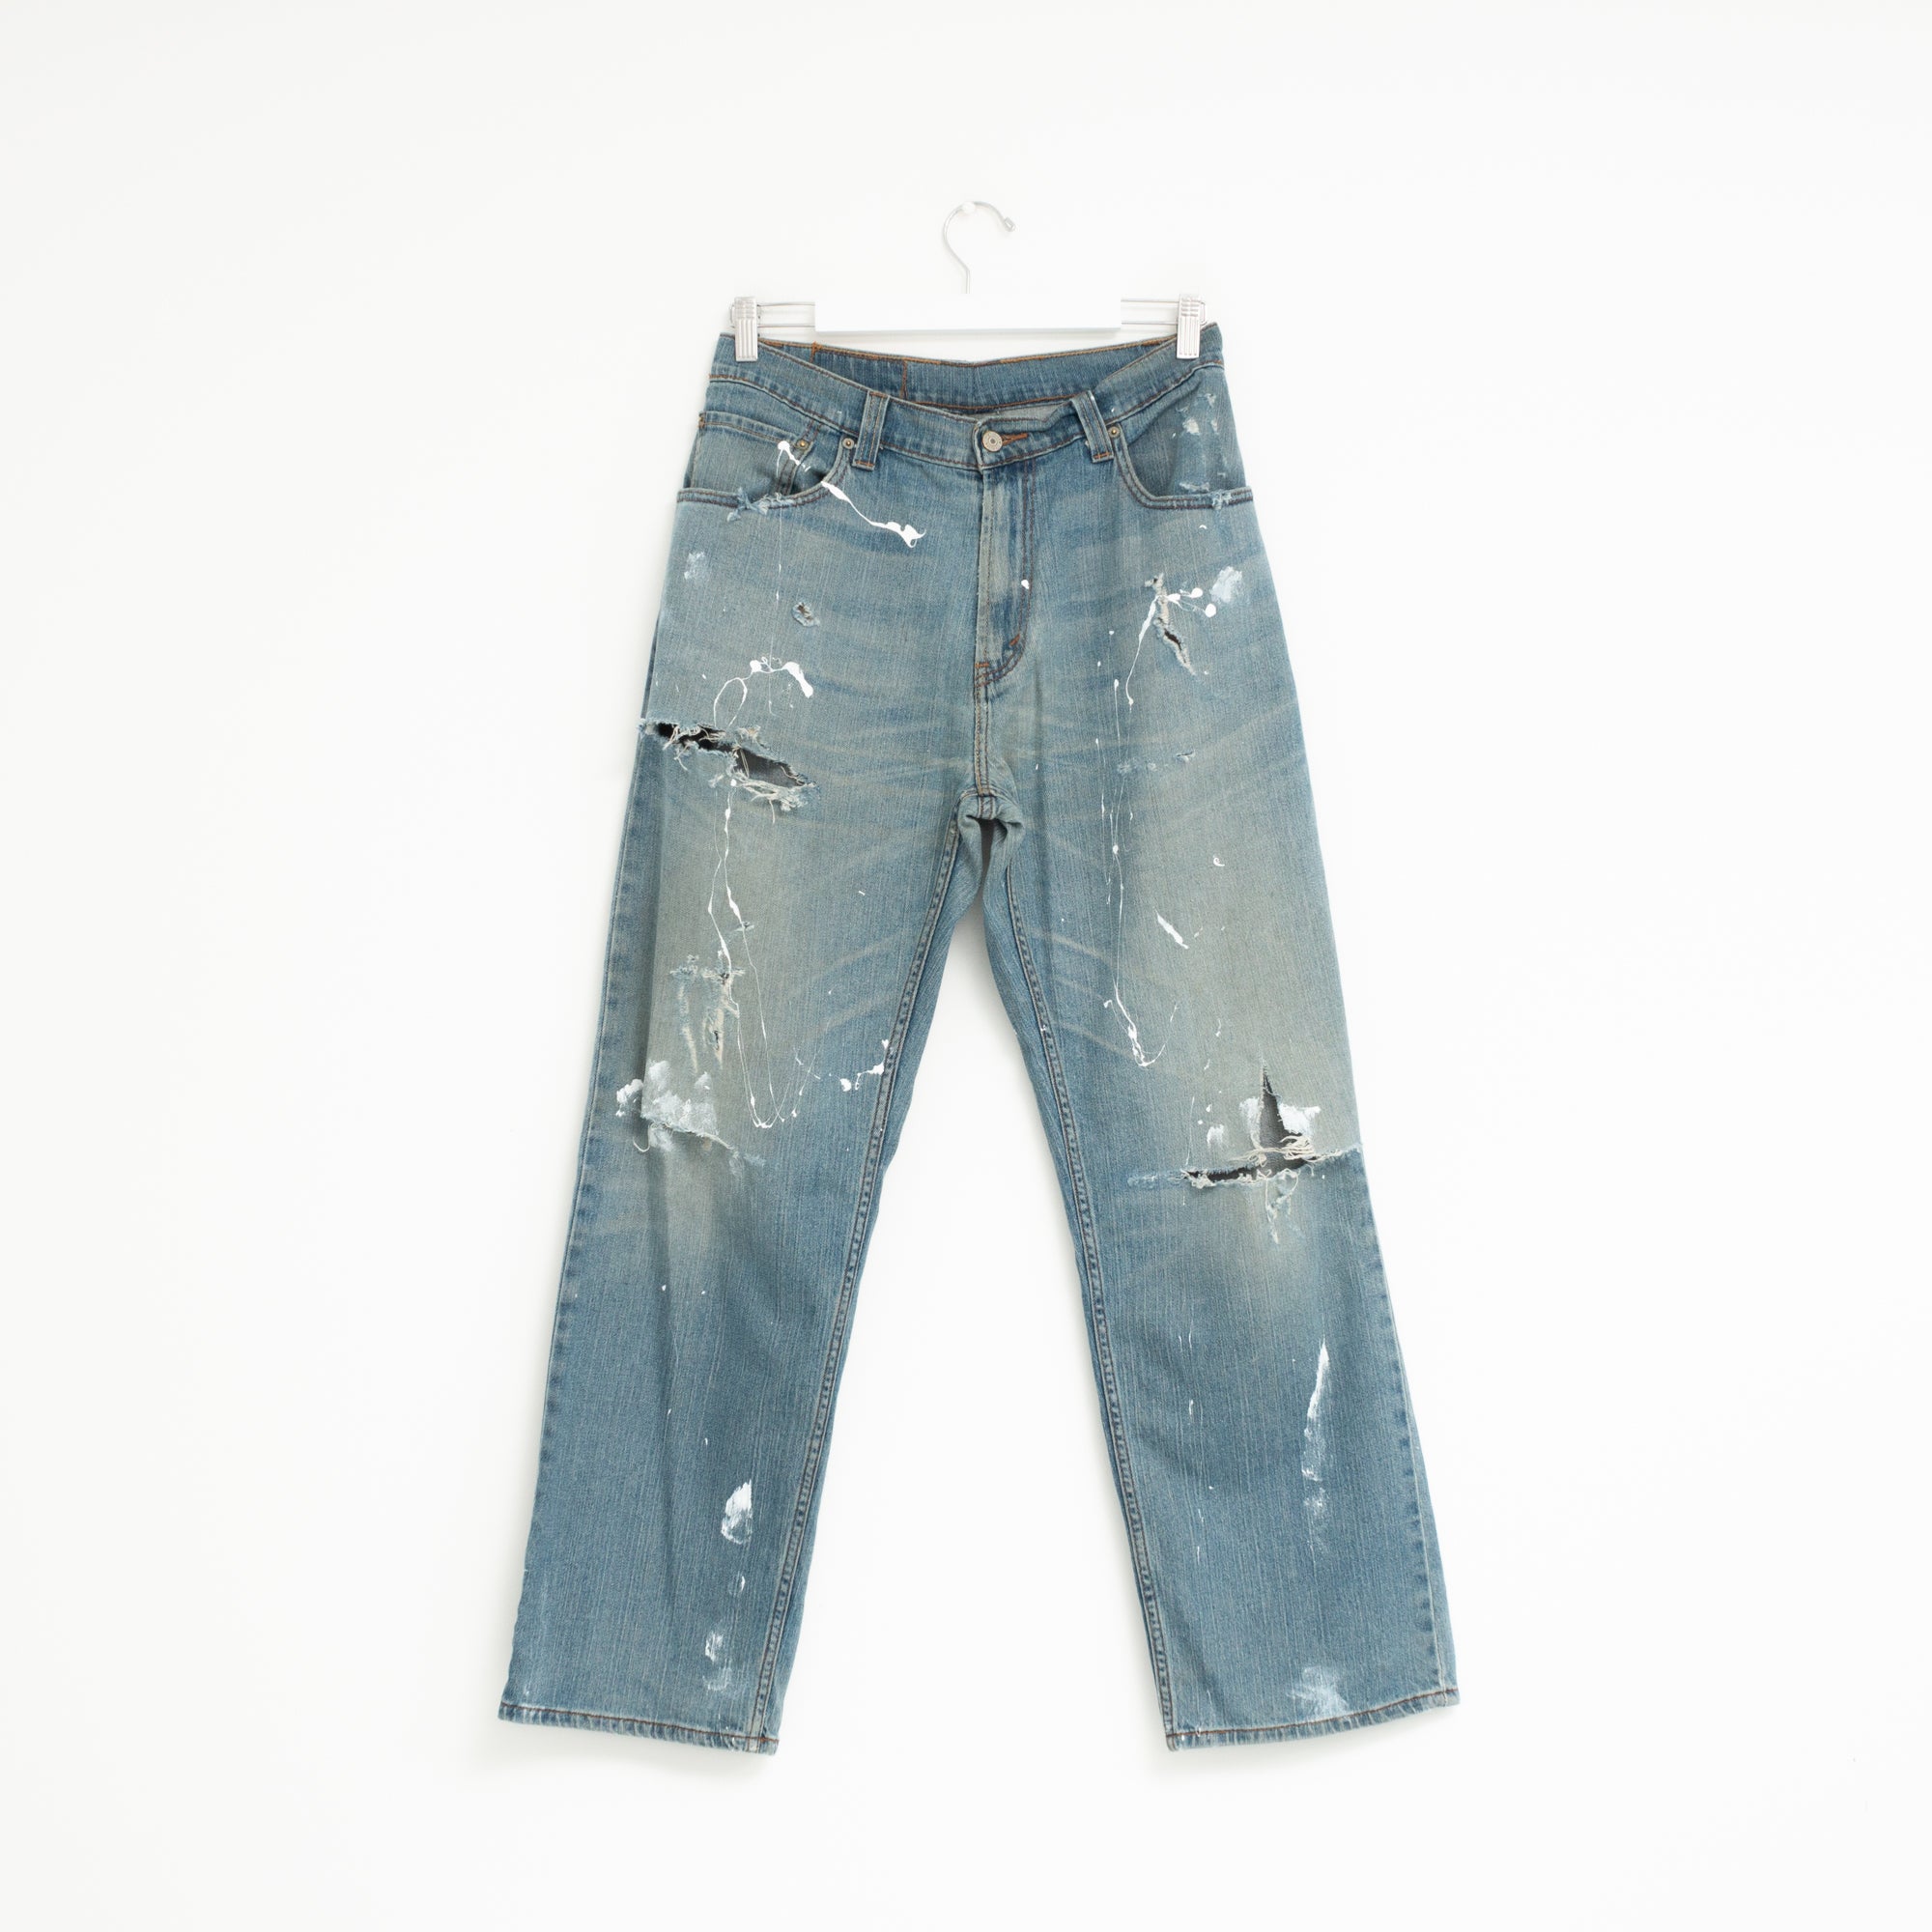 "PAINTER" Jeans W32 L30